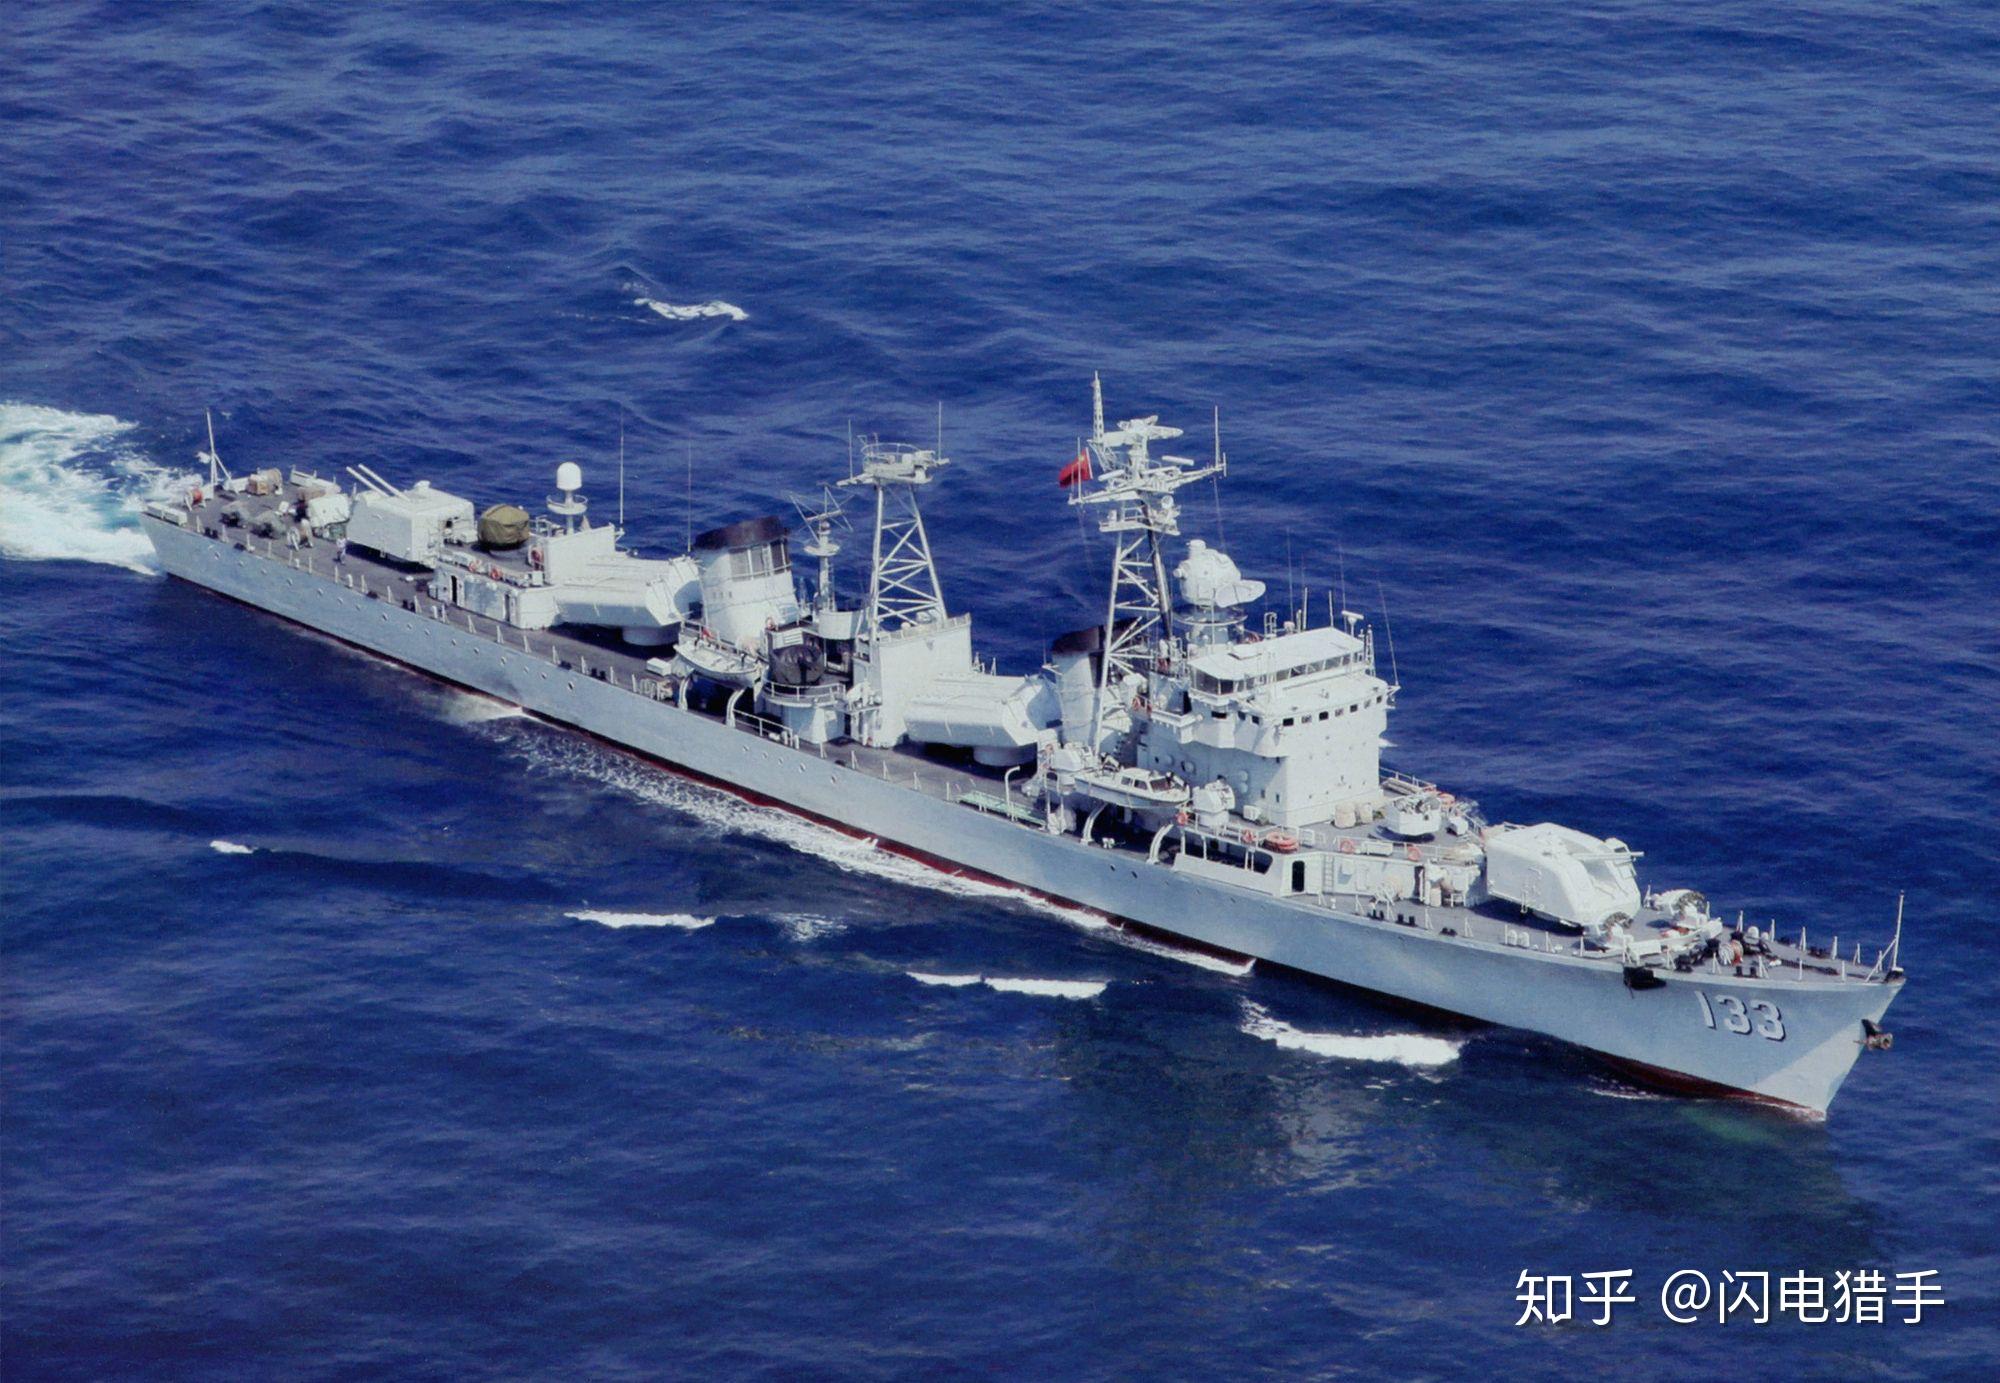 老舰传奇——中国051型导弹驱逐舰